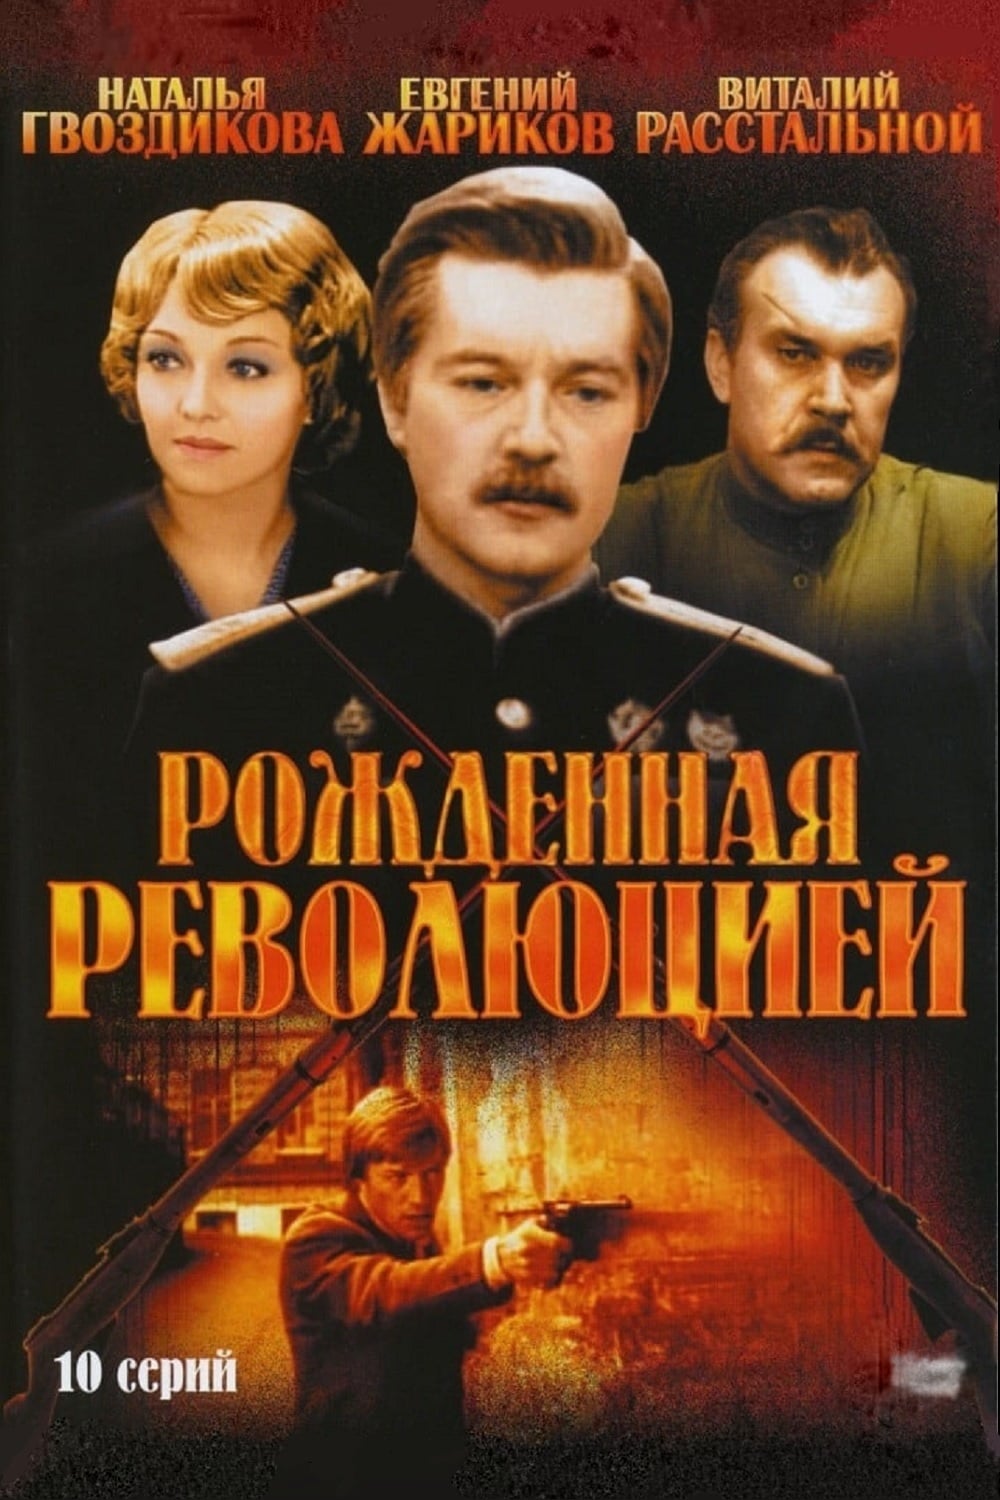 Rozhdyonnaya revolyutsiey (1974)